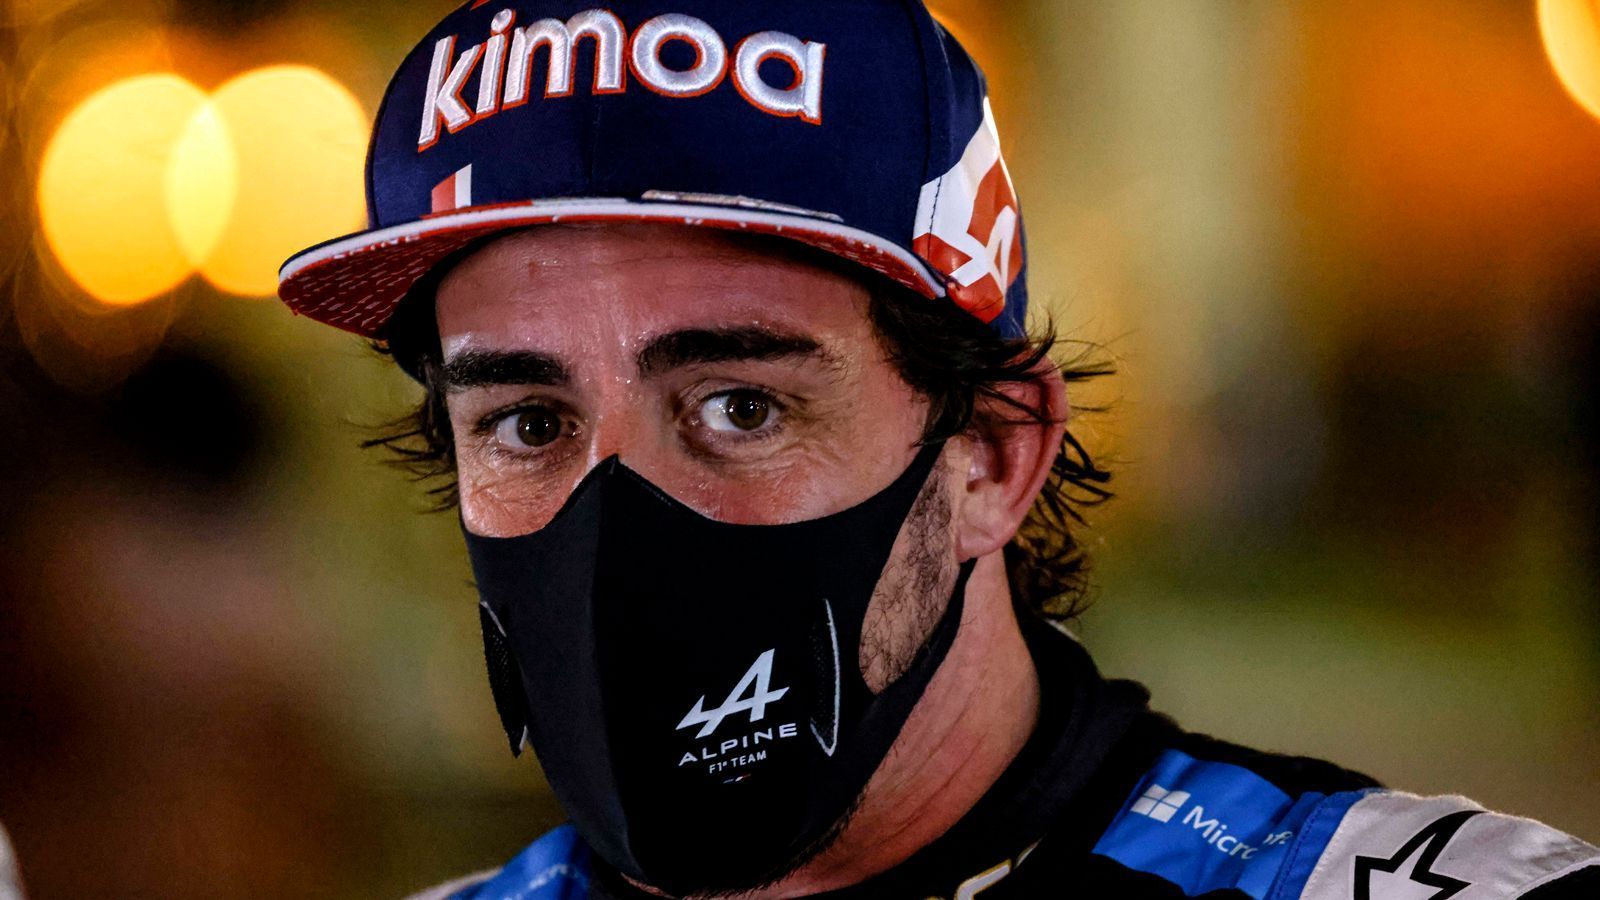 
                <strong>Fernando Alonso kann es auch mit 39 noch</strong><br>
                Nach zwei Jahren Formel-1-Abstinenz hat sich Fernando Alonso mit seinen 39 Jahren vielversprechend zurückgemeldet. Im Alpine wurde der Spanier auf Anhieb Neunter. Dabei habe er sich laut eigener Aussage vor allem mit dem Heck des eigenen Boliden unwohl gefühlt. Trotz Akklimatisierungsphase ein gelungenes Comeback!
              